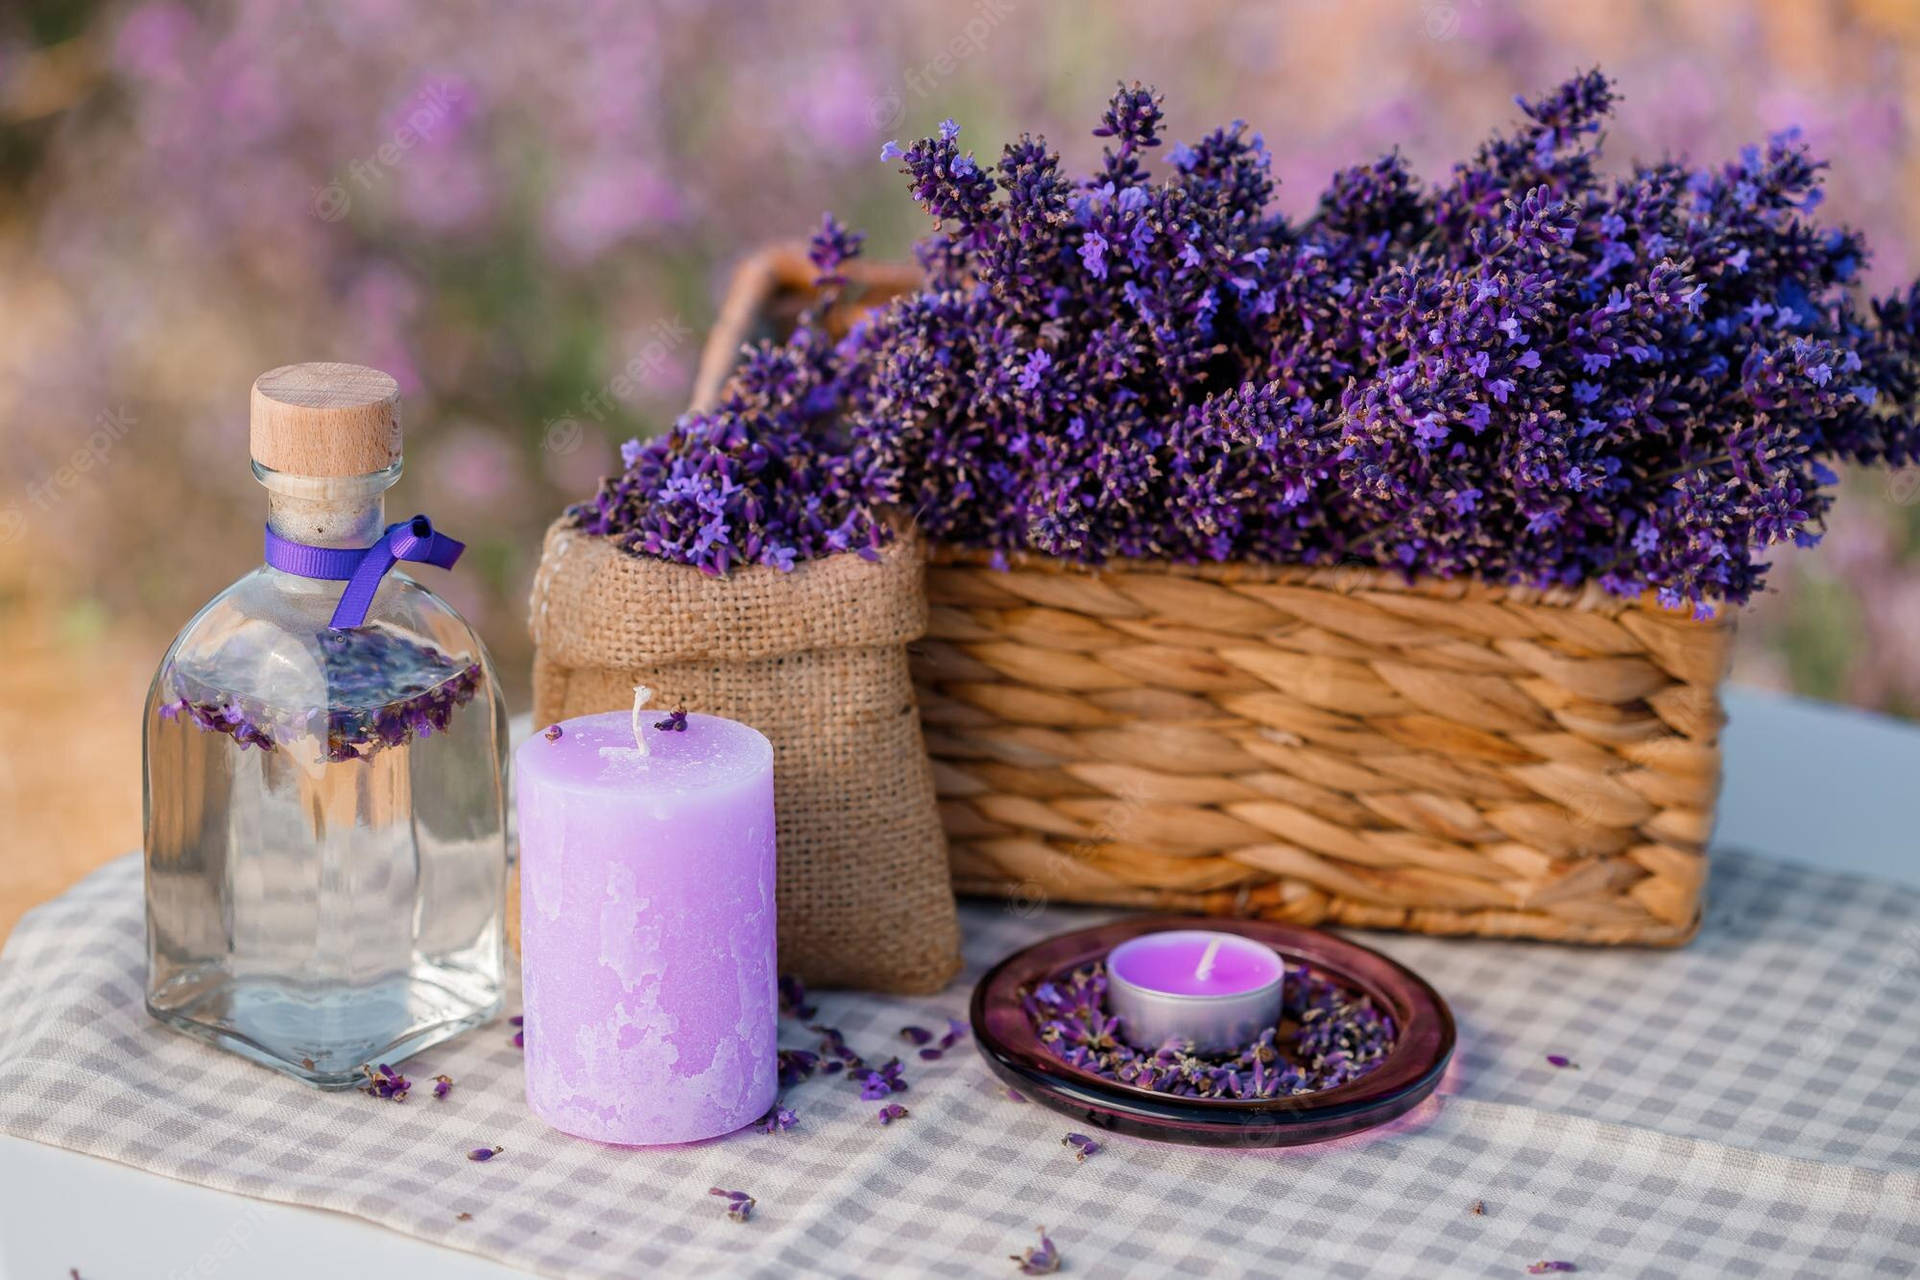 27 Lavender Pictures  Download Free Images on Unsplash